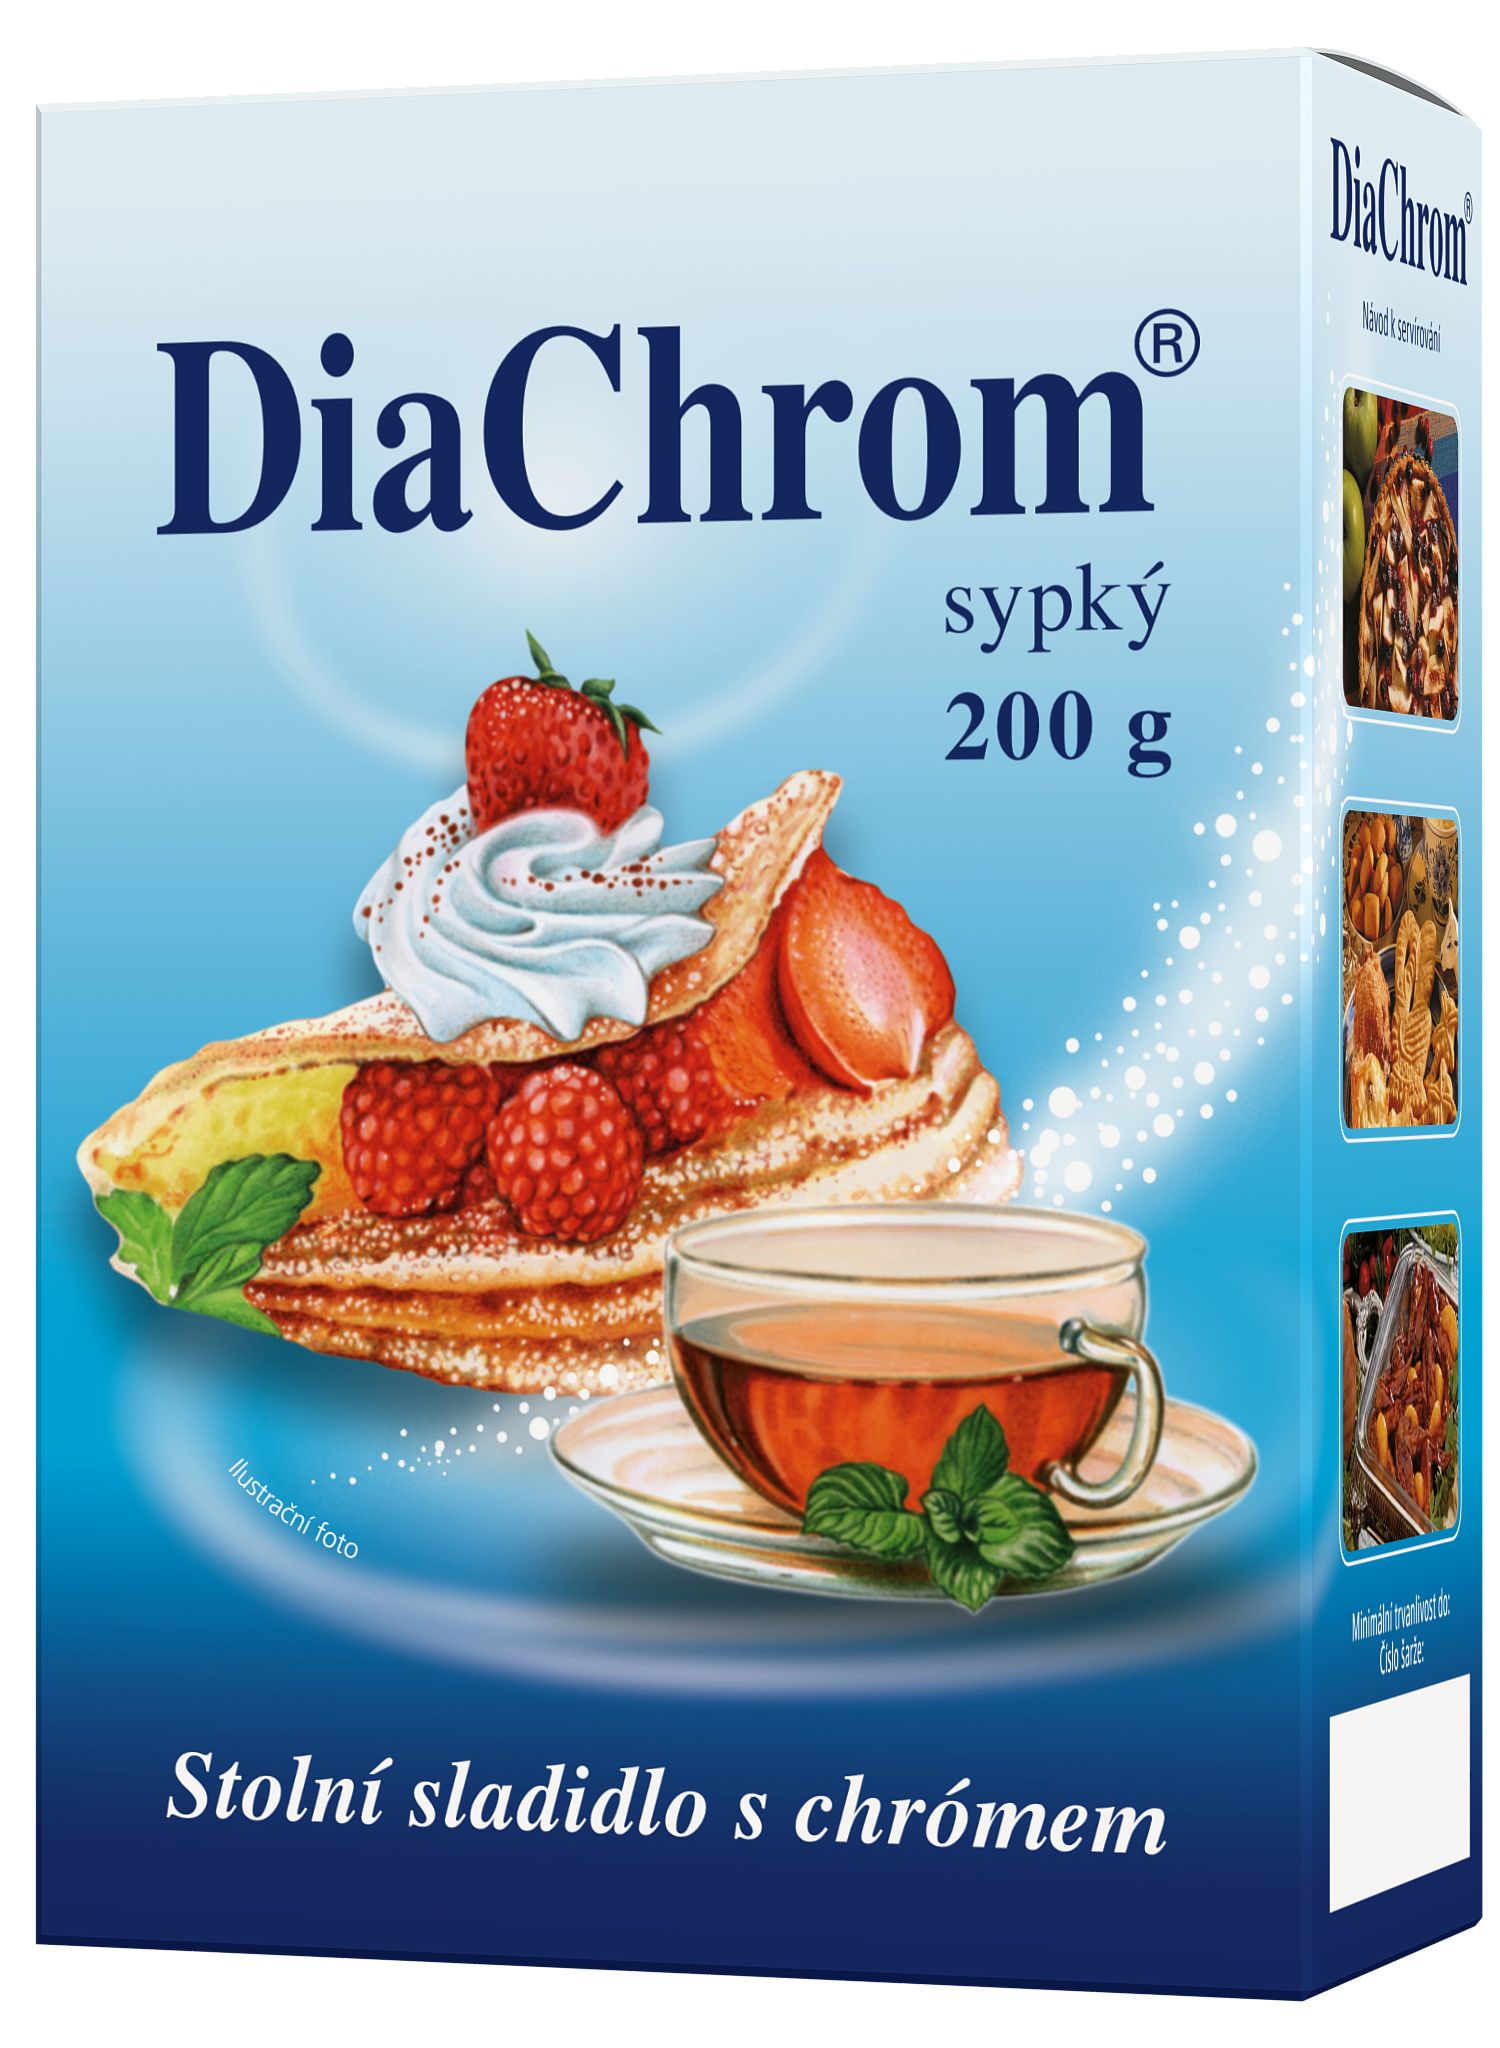 DiaChrom sypký nízkokalorické sladidlo 200 g DiaChrom